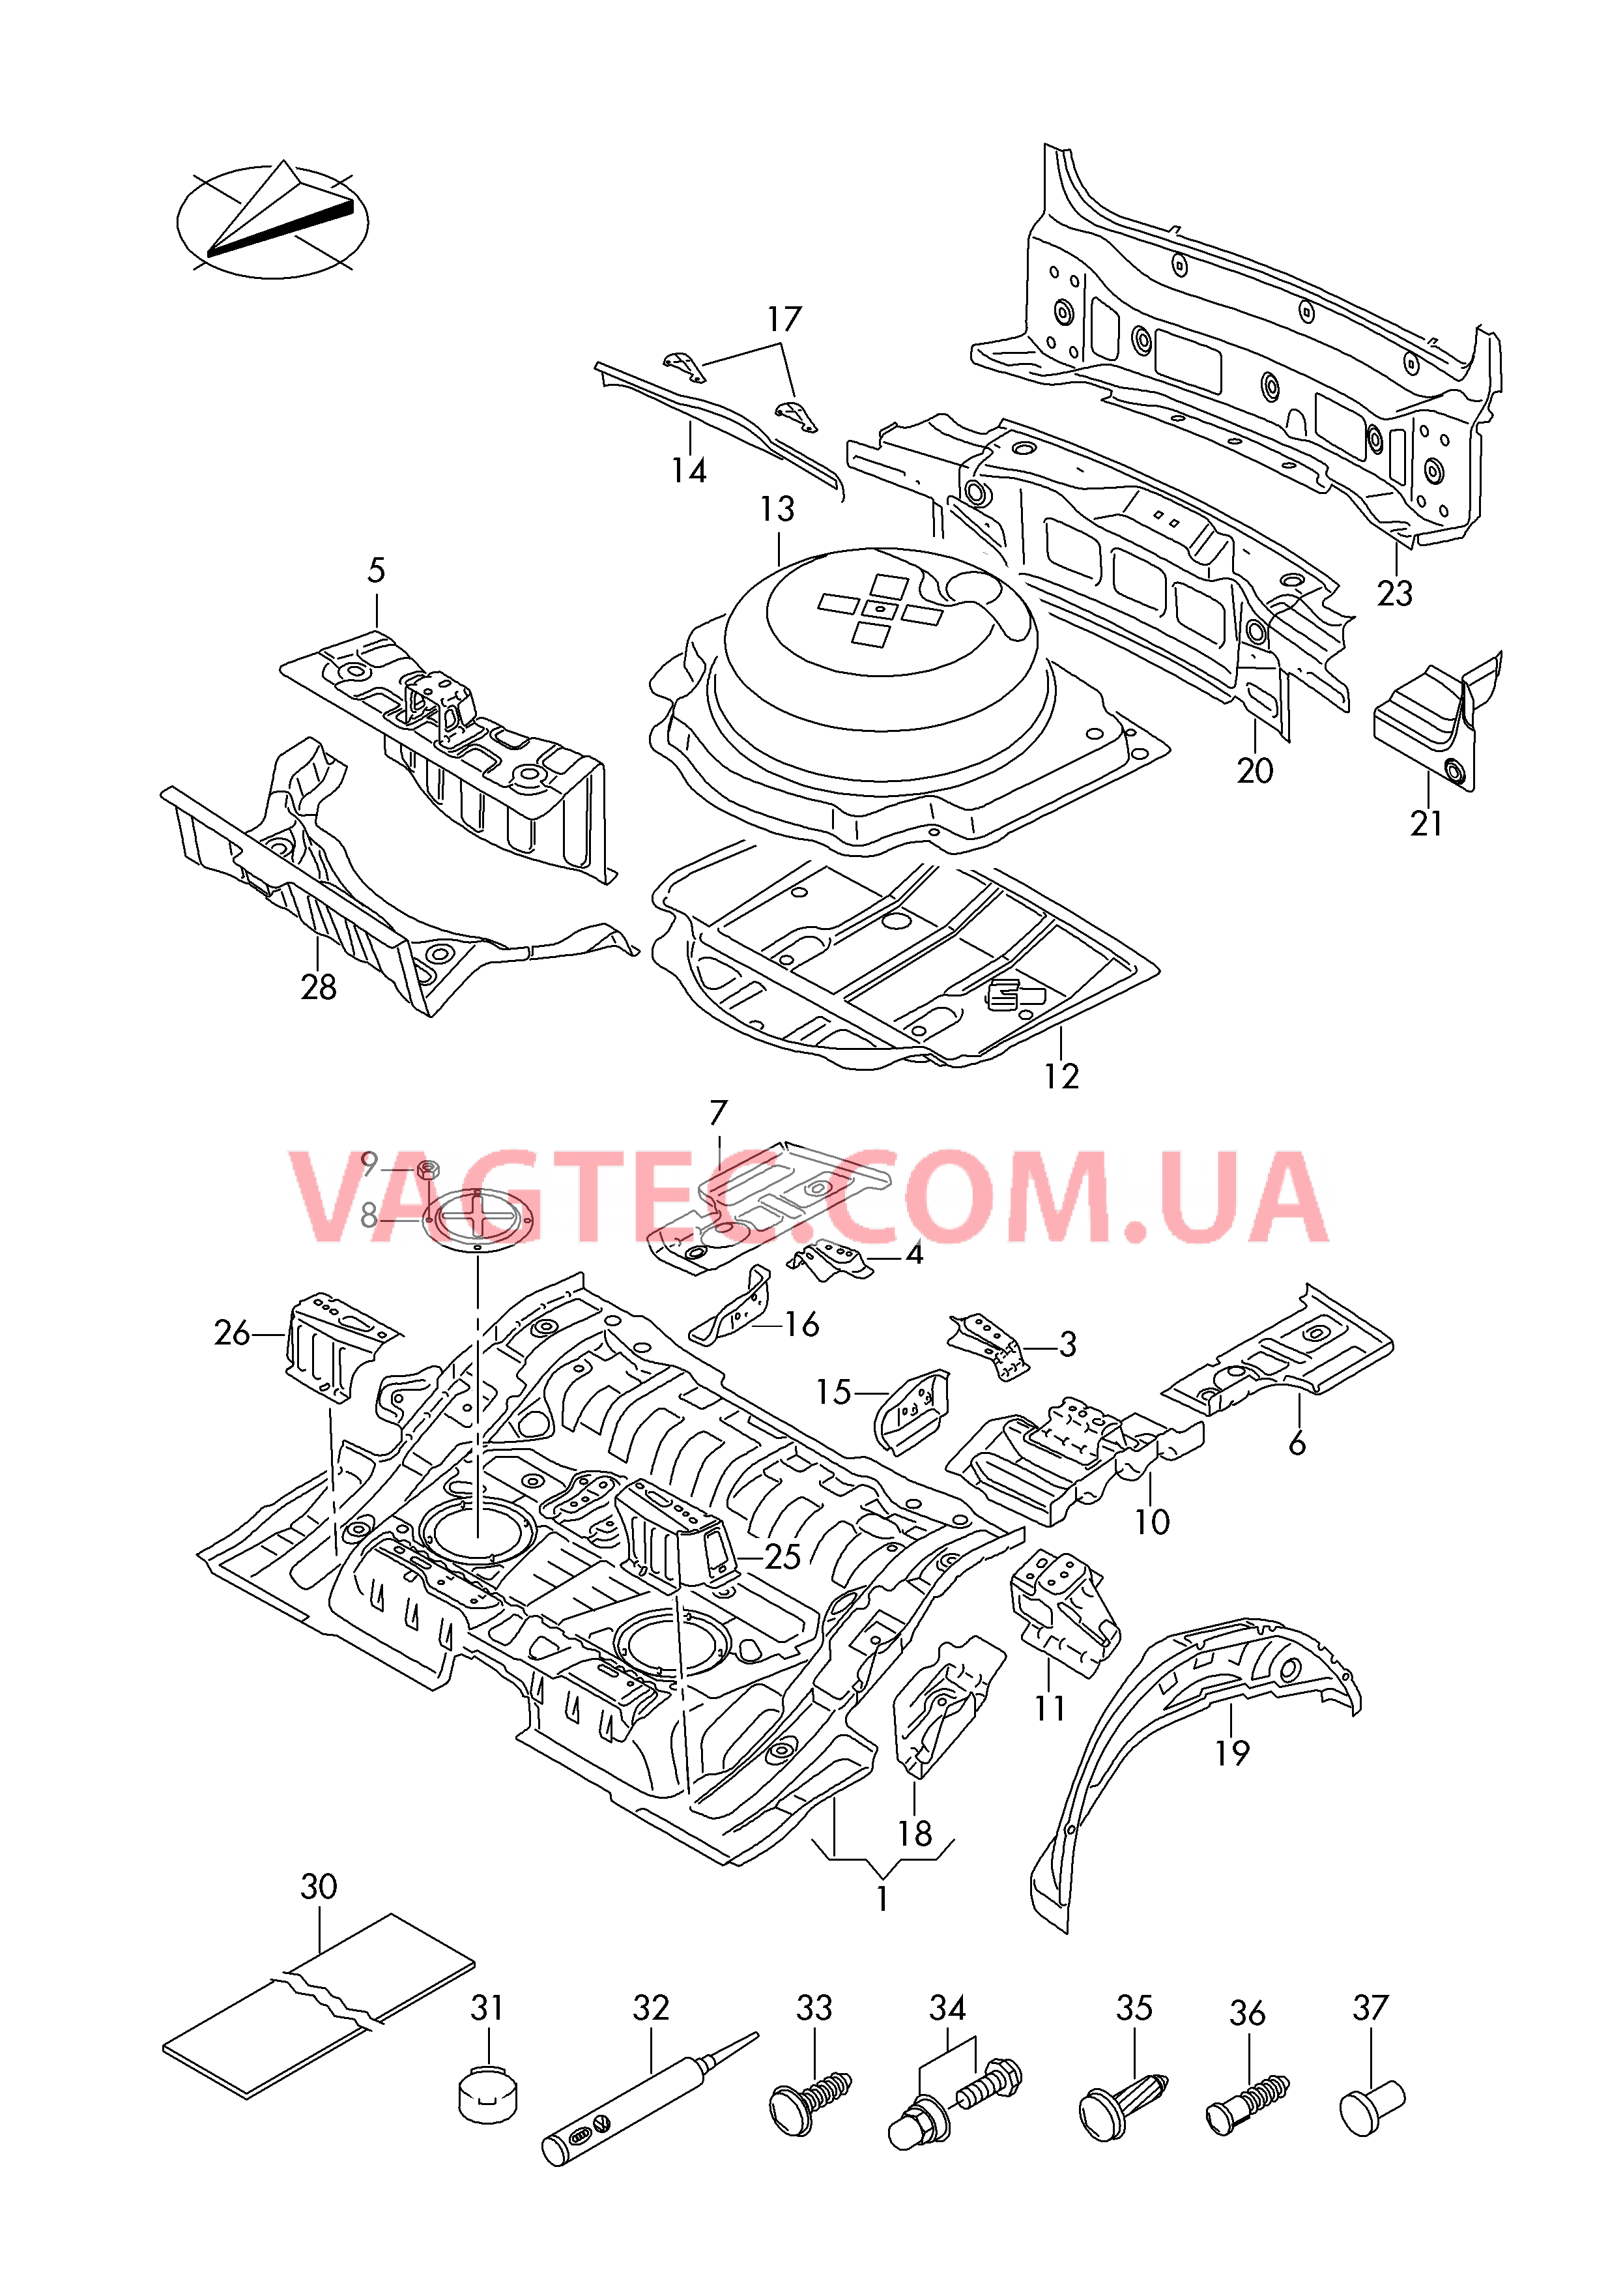 Детали нижней части кузова Задняя панель  для VOLKSWAGEN Touareg 2018